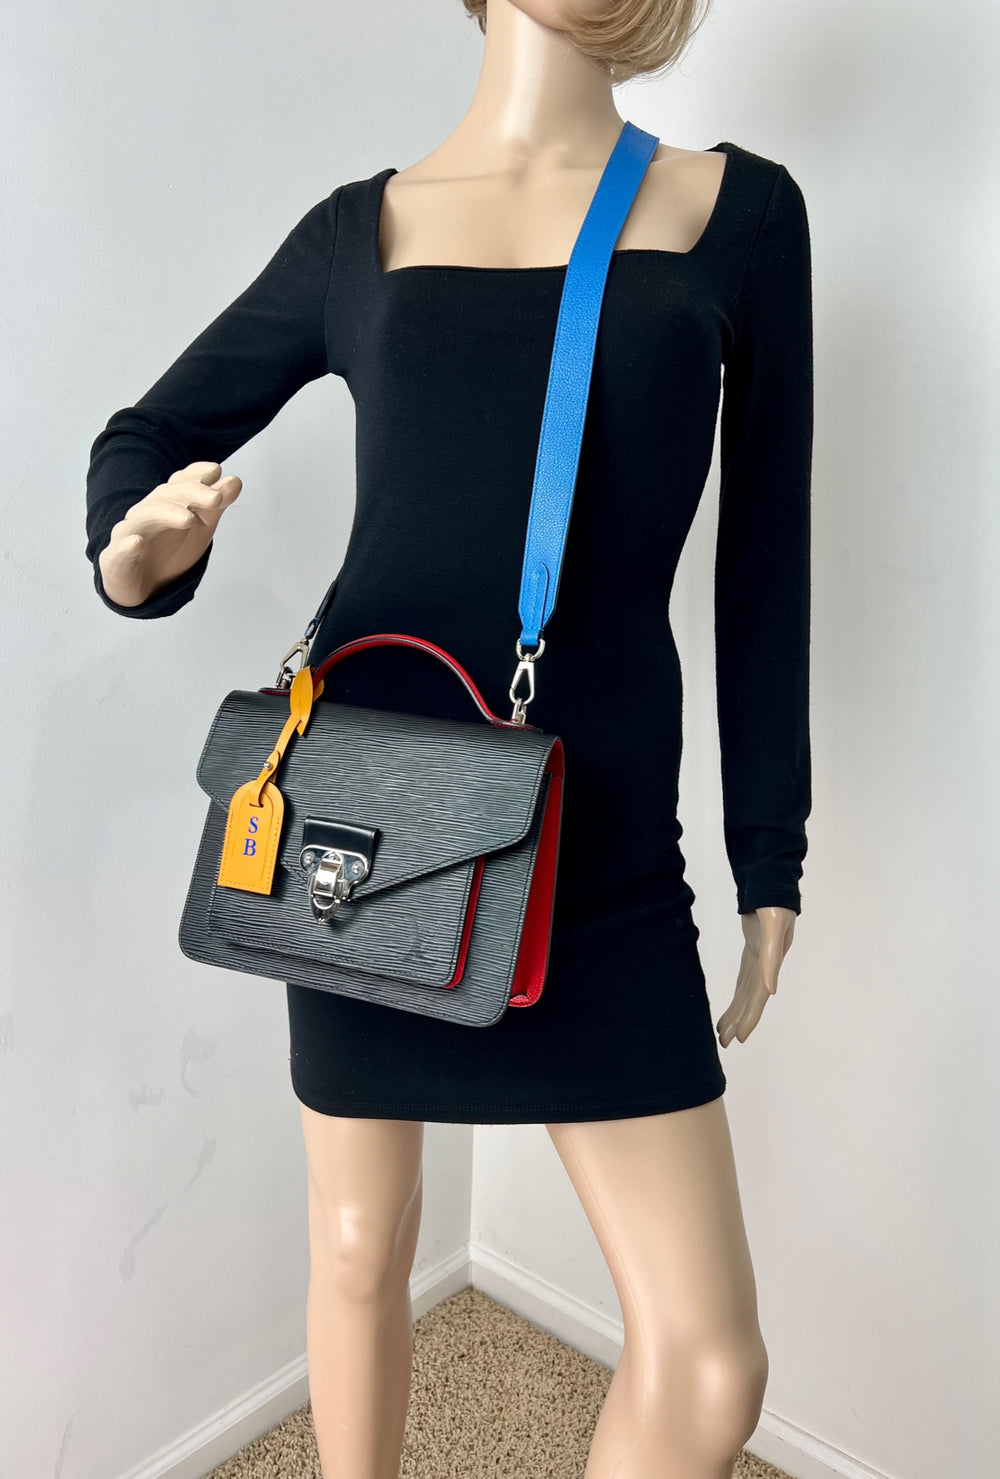 Authentic Louis Vuitton Noe Noir Epi Shoulder Bag GM